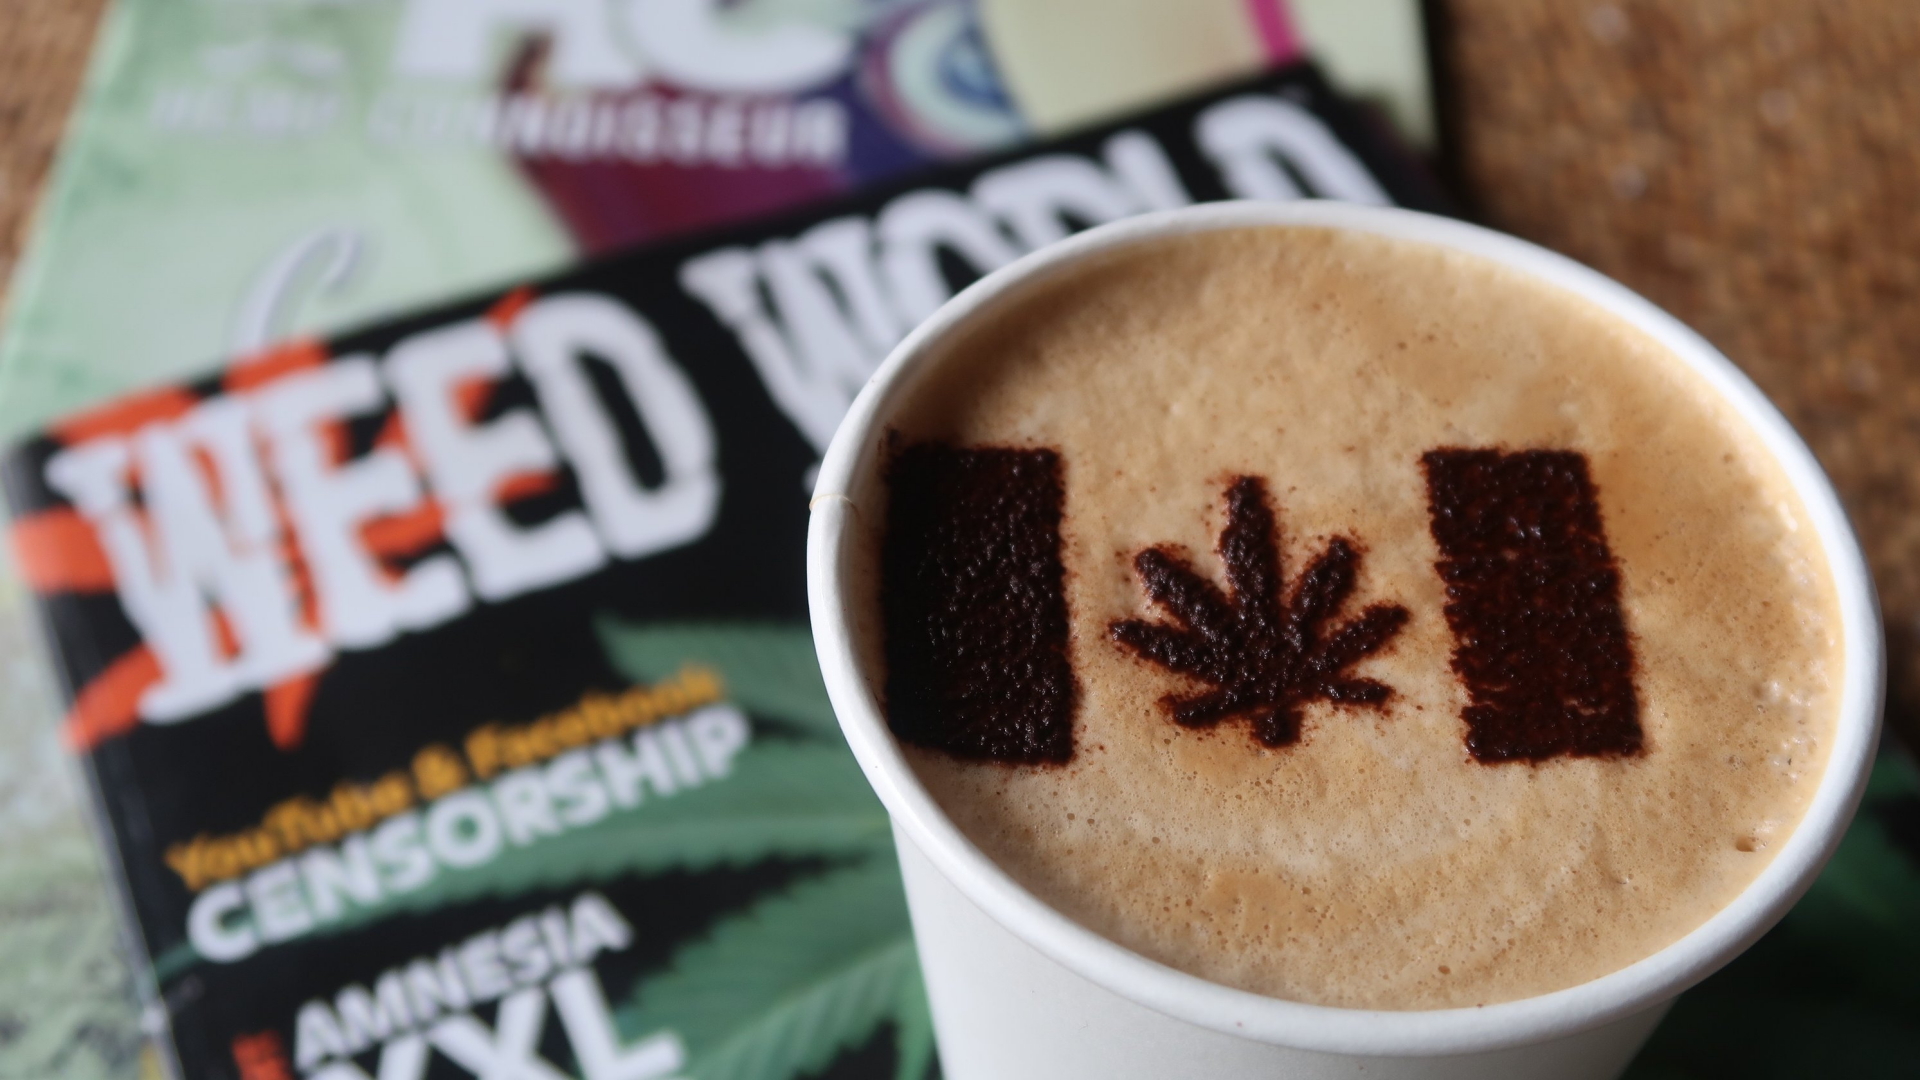 Cannabis-Blatt als Marihuana-Symbol auf dem Milchschaum eines Latte Macchiato. | Bildquelle: dpa